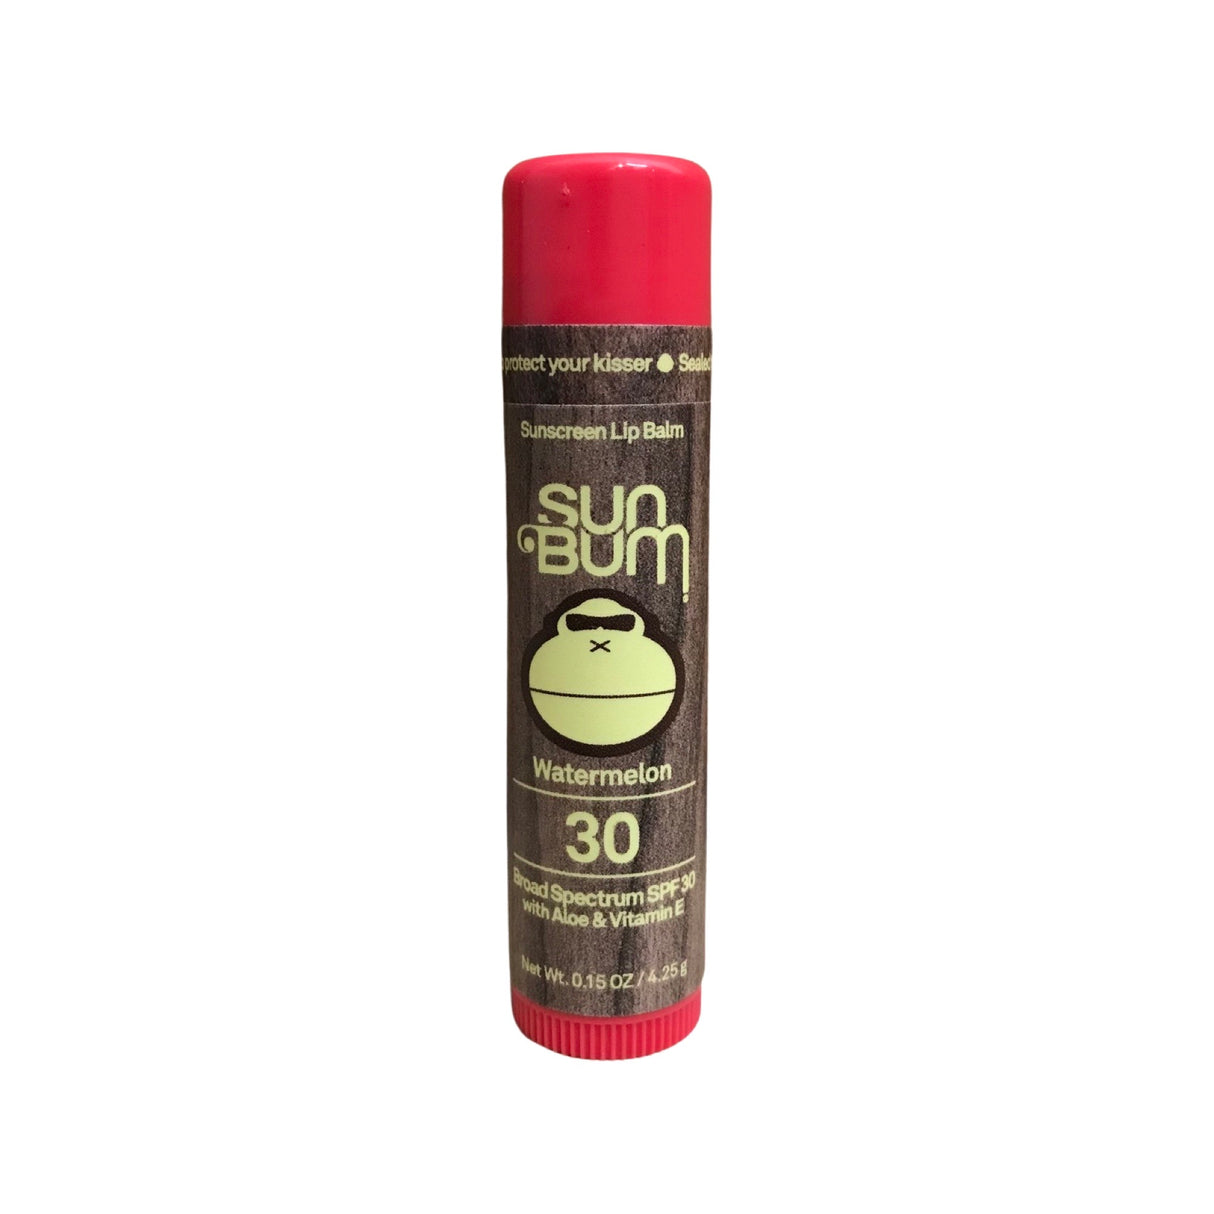 Sun Bum Watermelon Lip Balm - Broad Spectrum SPF 30 W/ Aloe & Vitamin E